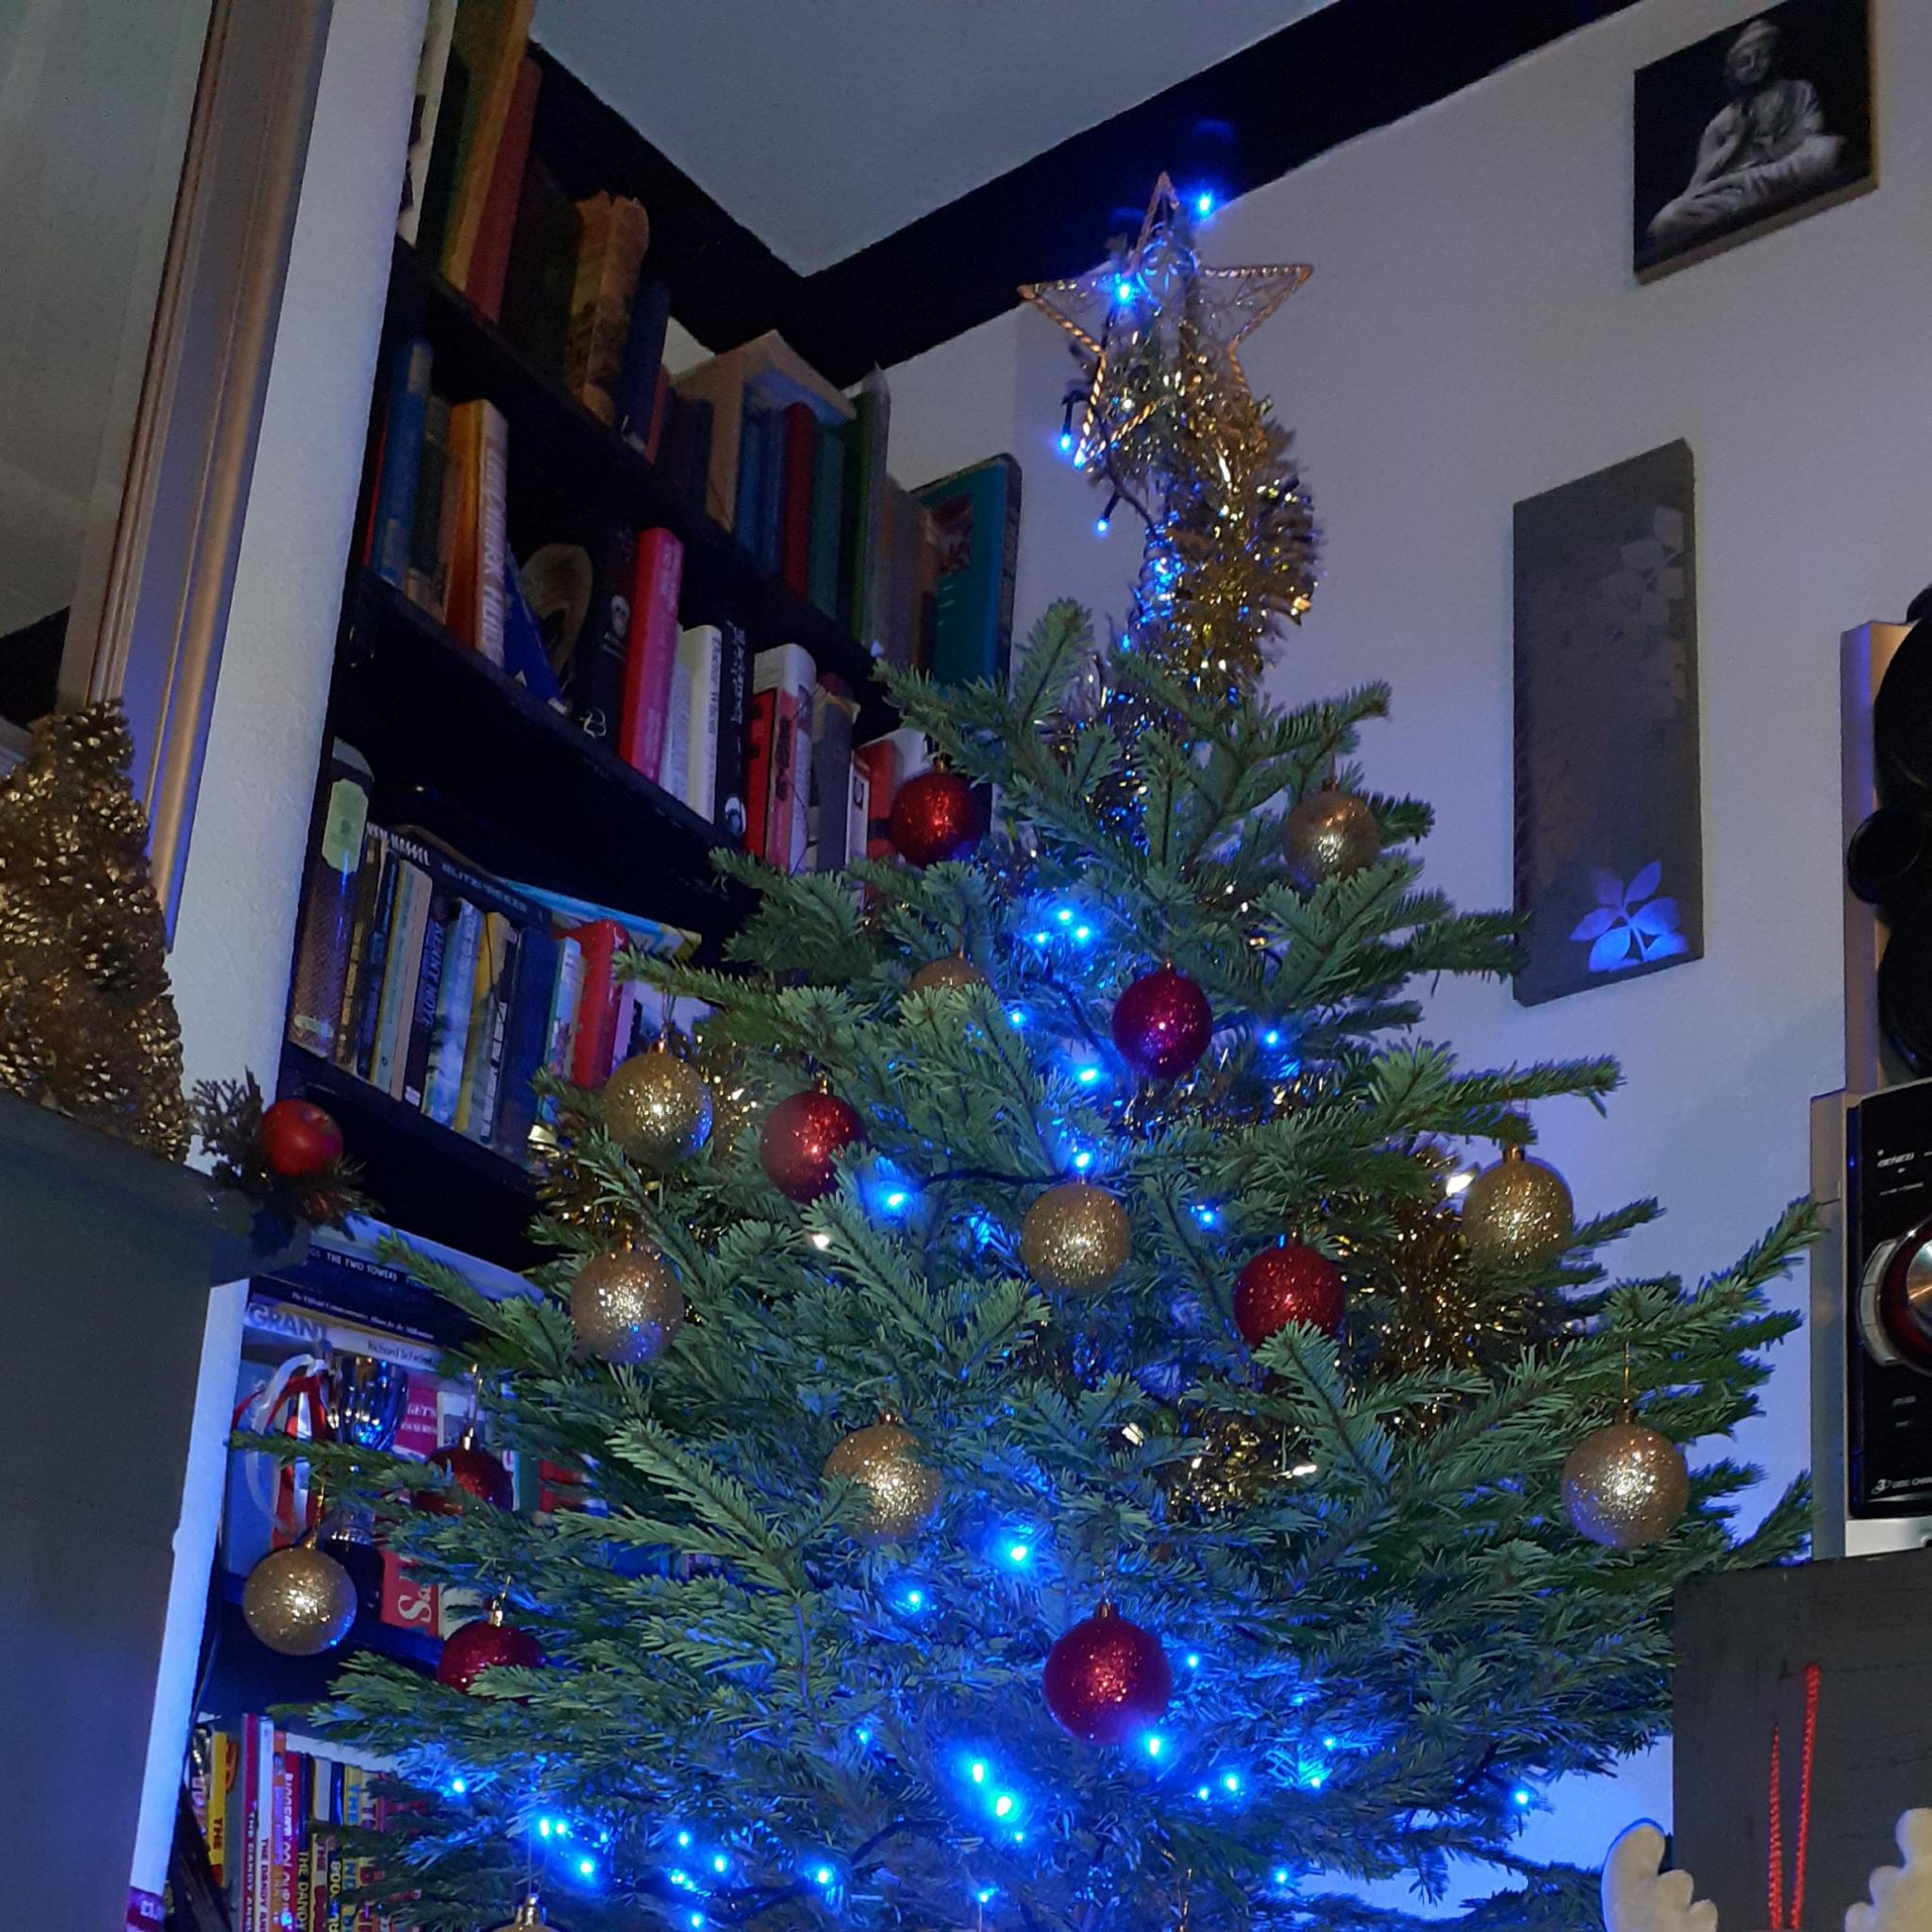 Show us your Christmas tree-20201203_165220-jpg